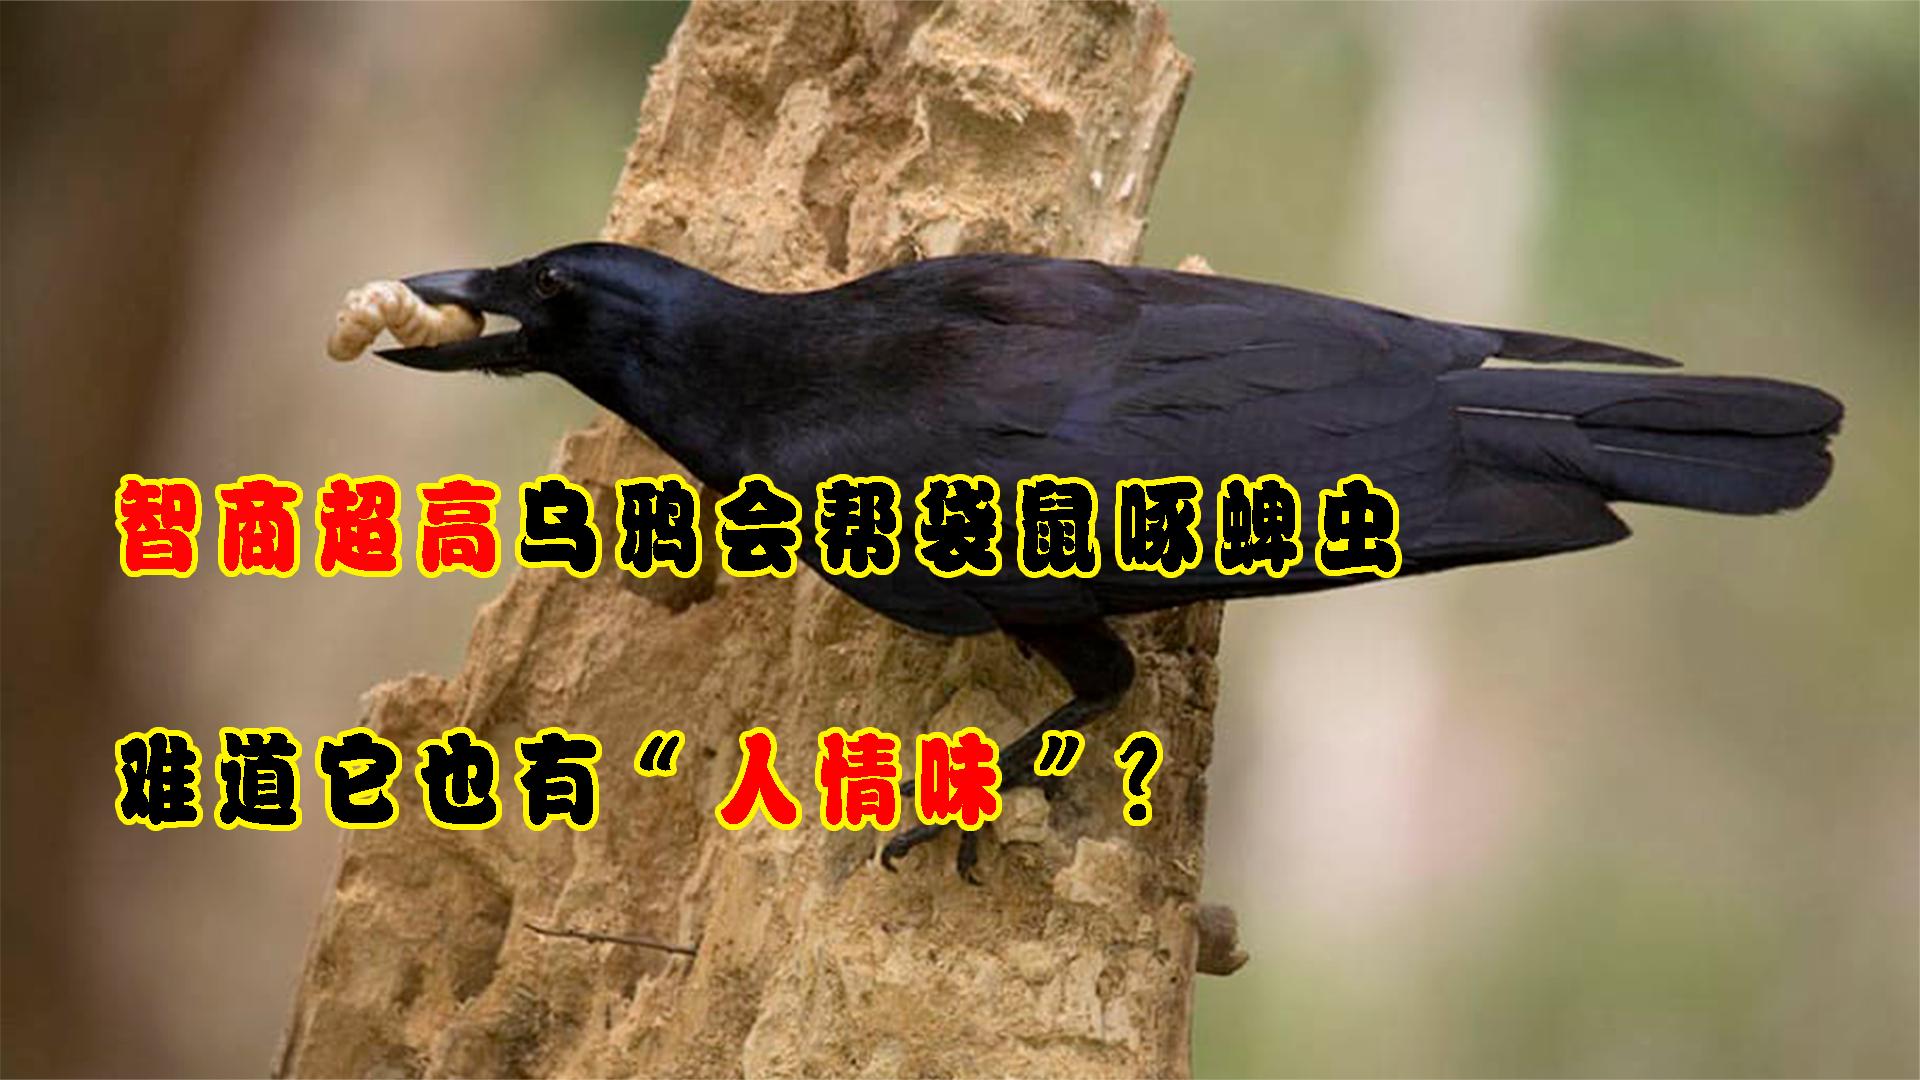 智商超高的乌鸦，会帮袋鼠啄掉蜱虫，难道它也有“人情味”？